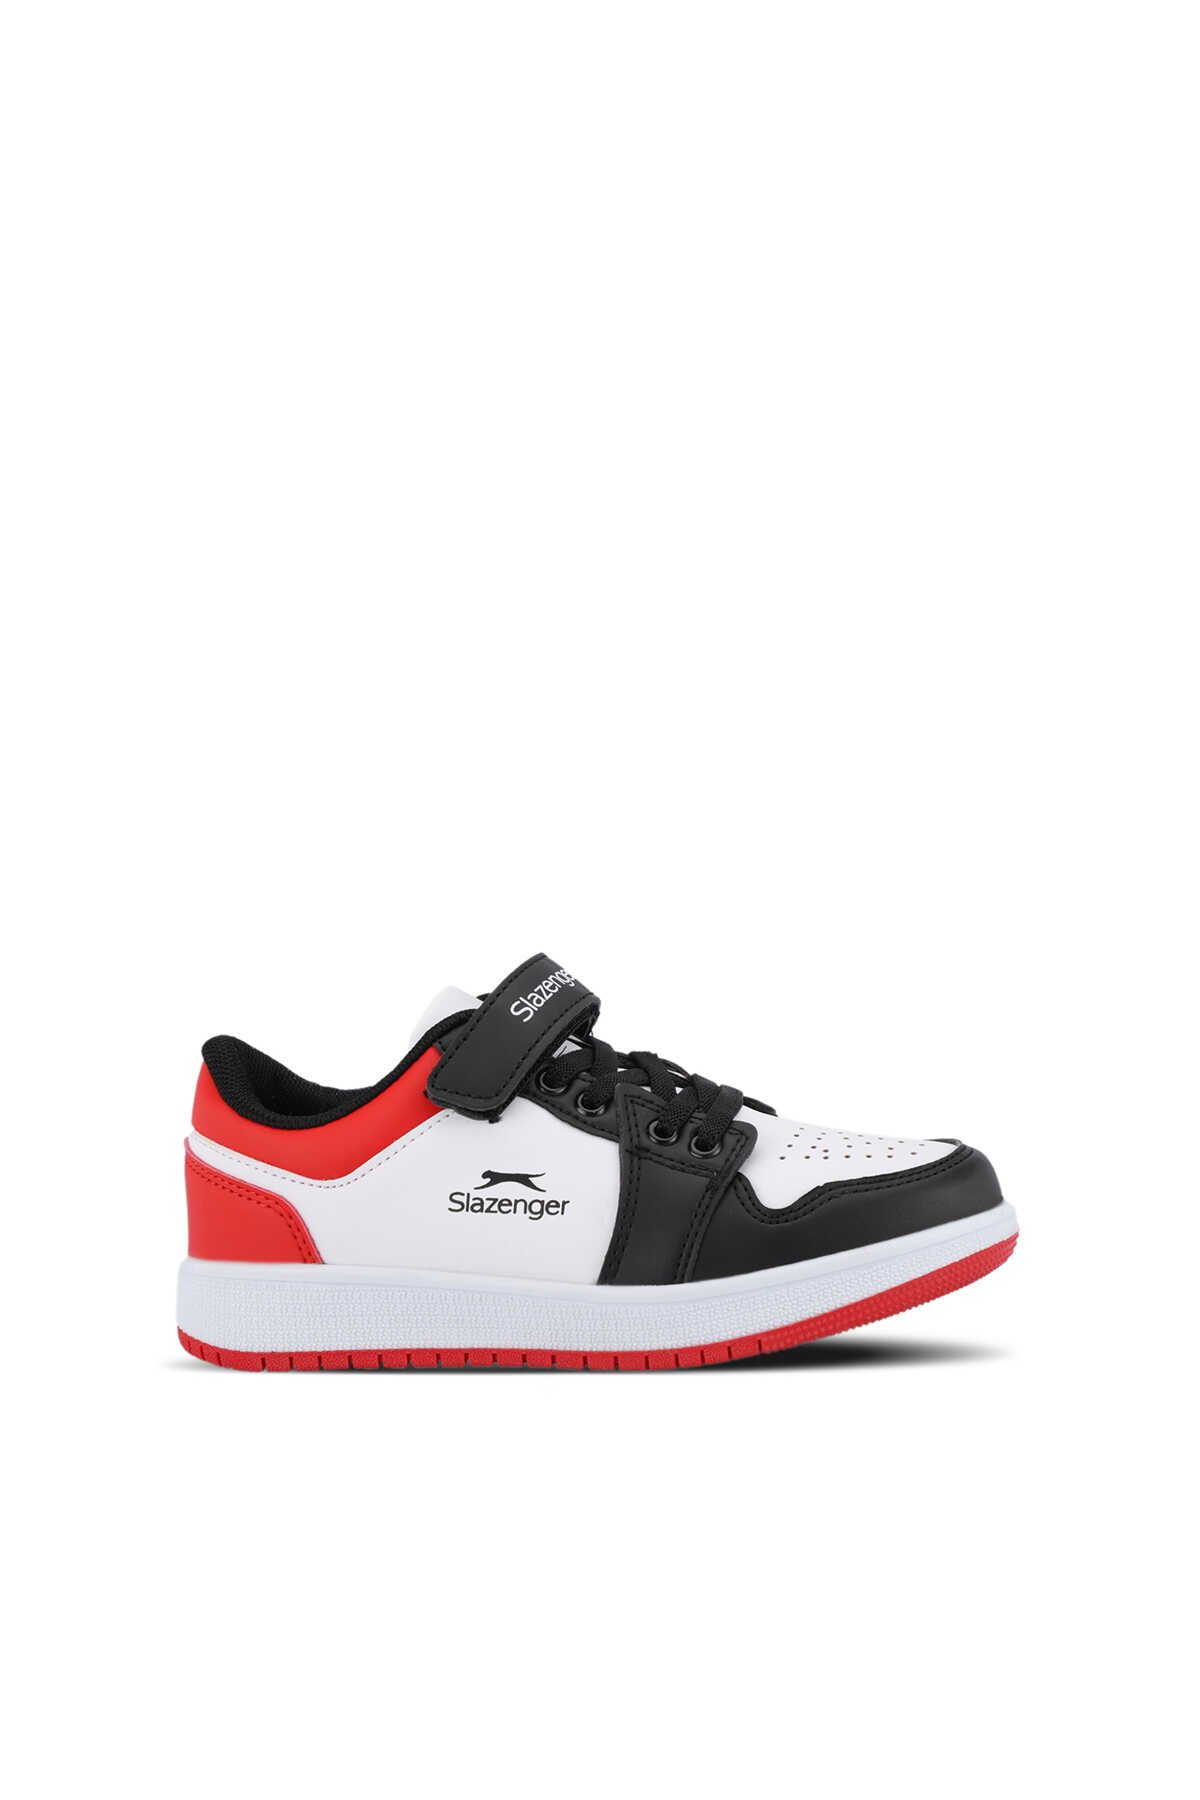 Slazenger - Slazenger PRINCE I Unisex Çocuk Sneaker Ayakkabı Beyaz / Siyah / Kırmızı